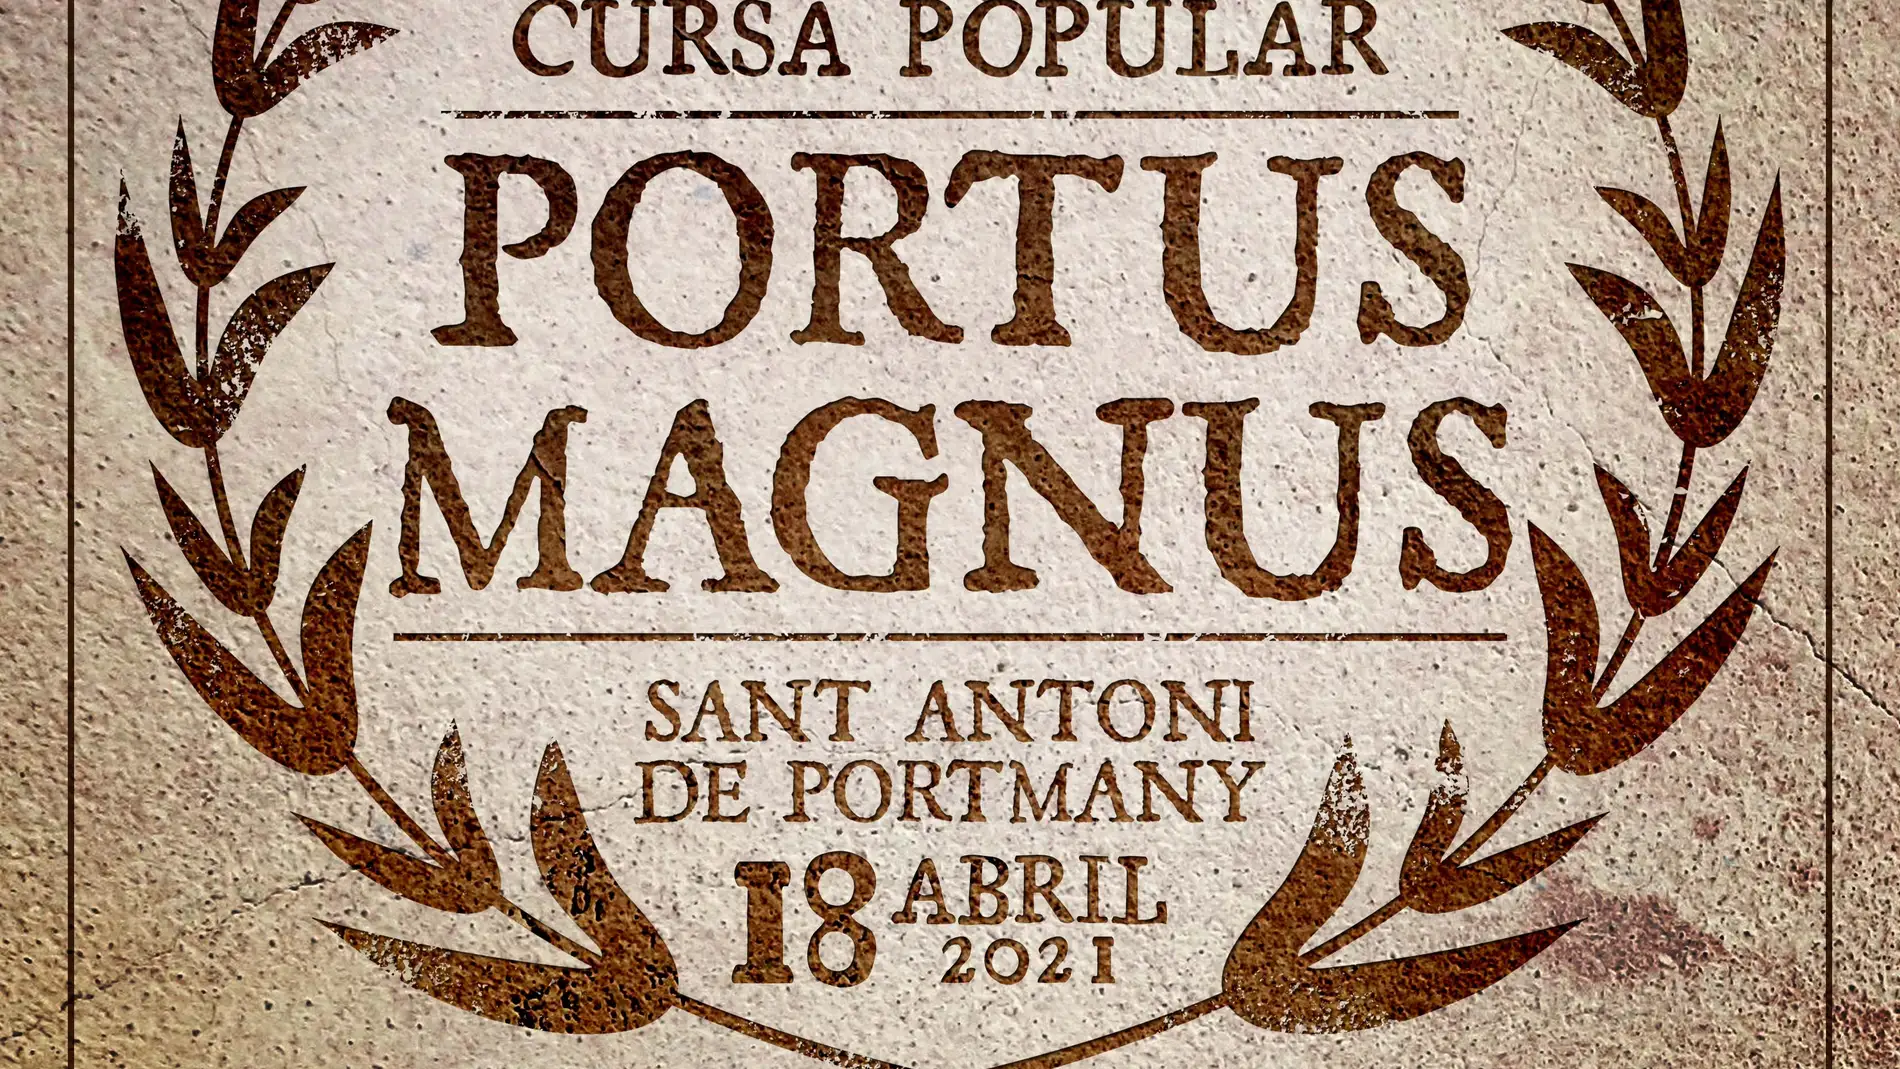 La Cursa Popular Portus Magnus celebra este domingo su undécima edición